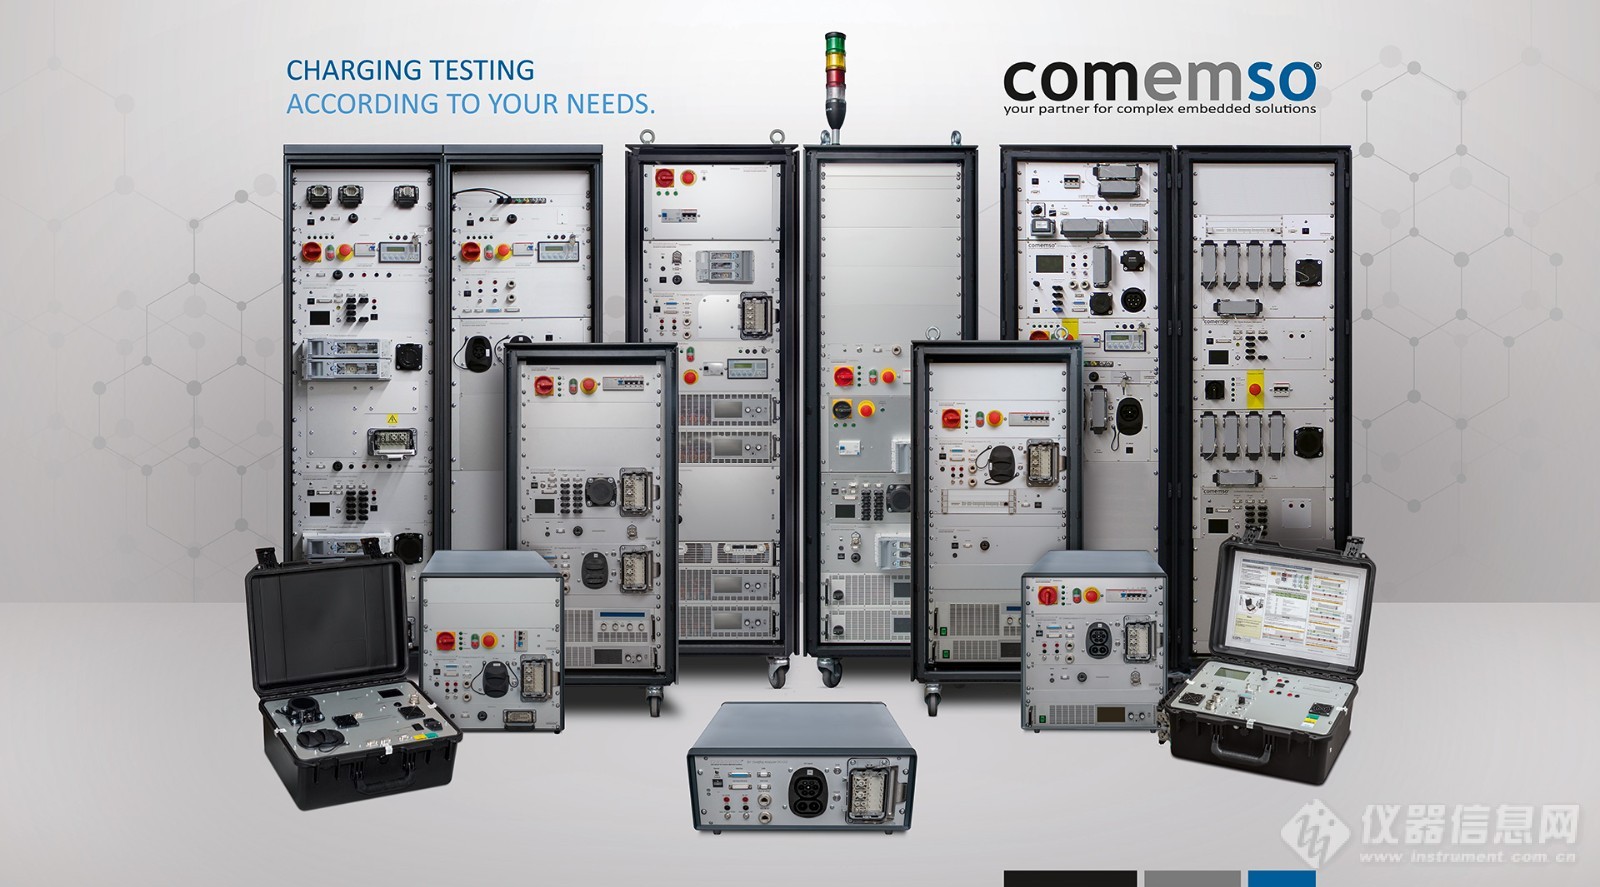 德国Comemso集团推出国际领先充电桩测试系统，针对国内充电桩测试七成不及格现状